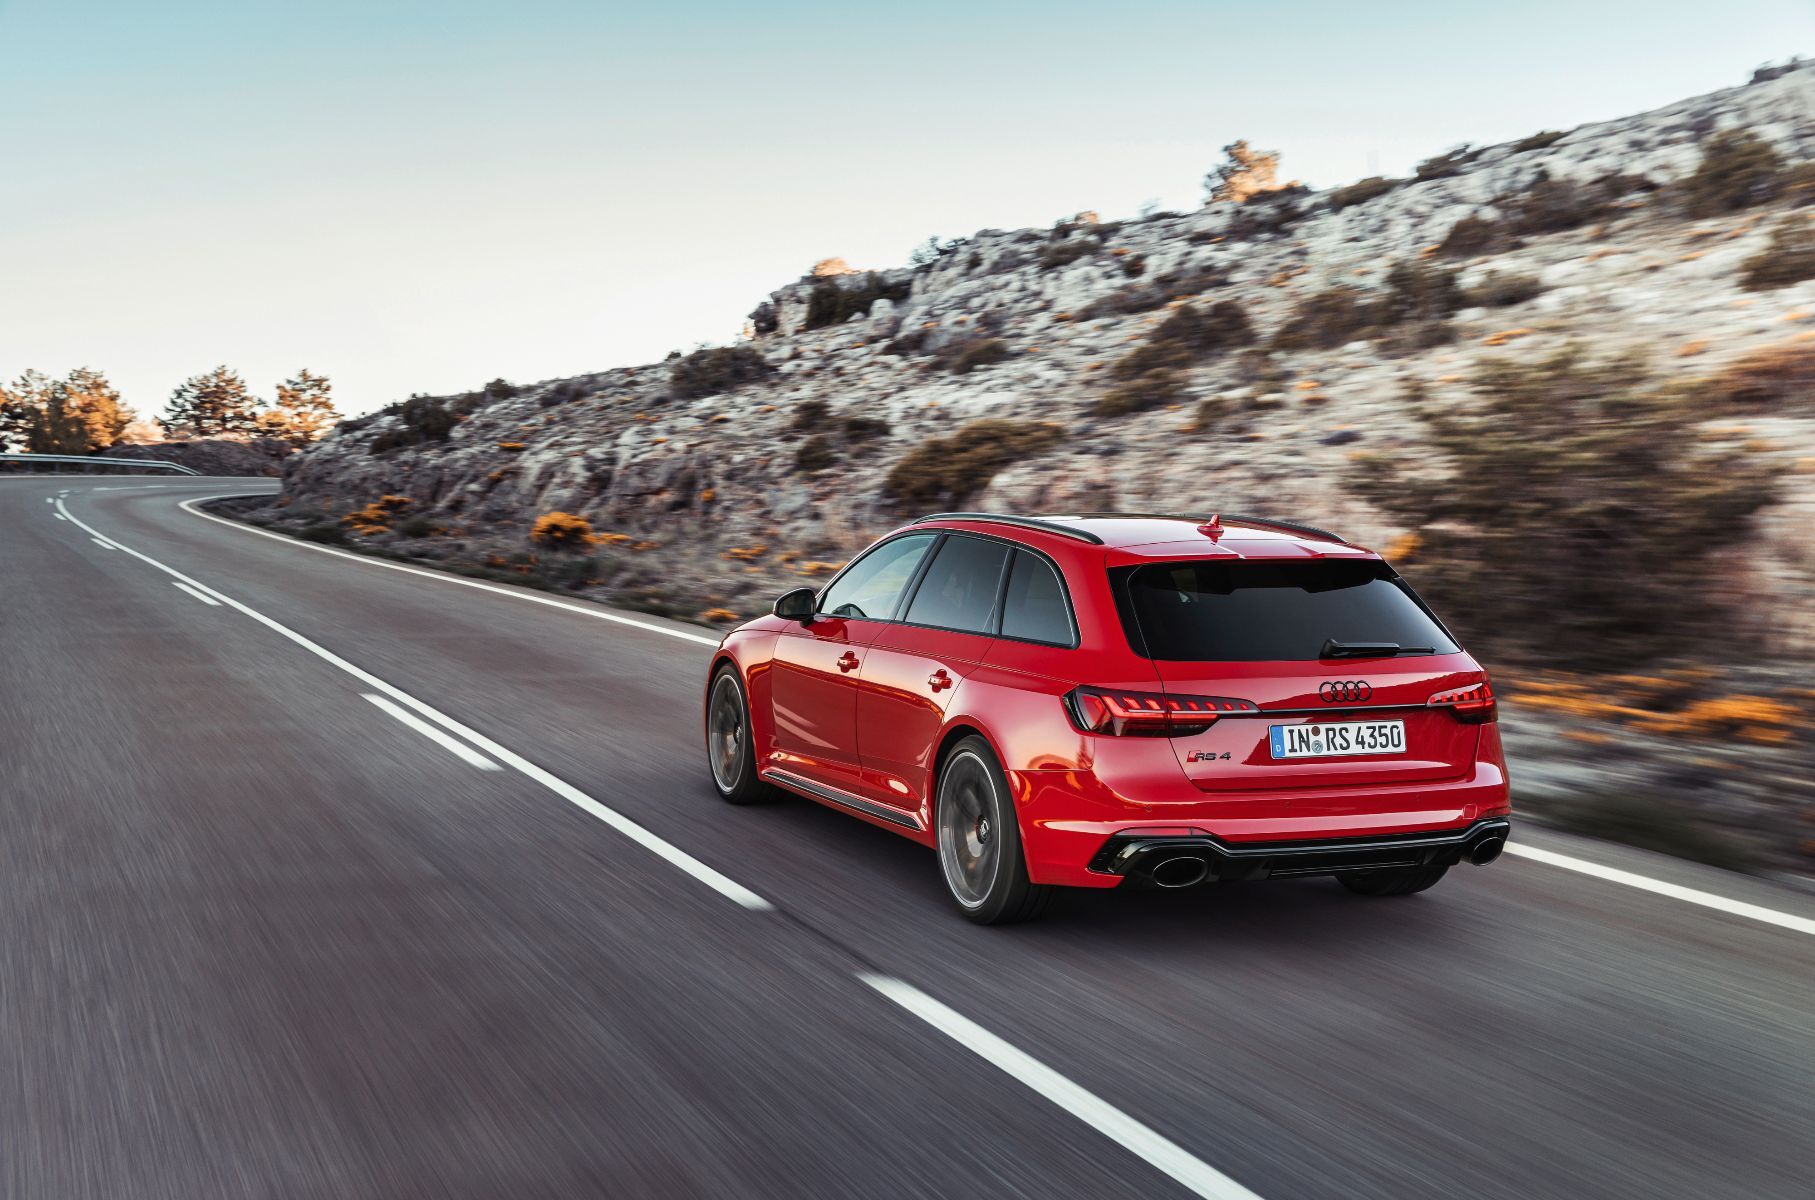 Раскрыта стоимость обновленных Audi RS 4 и RS 5 для России